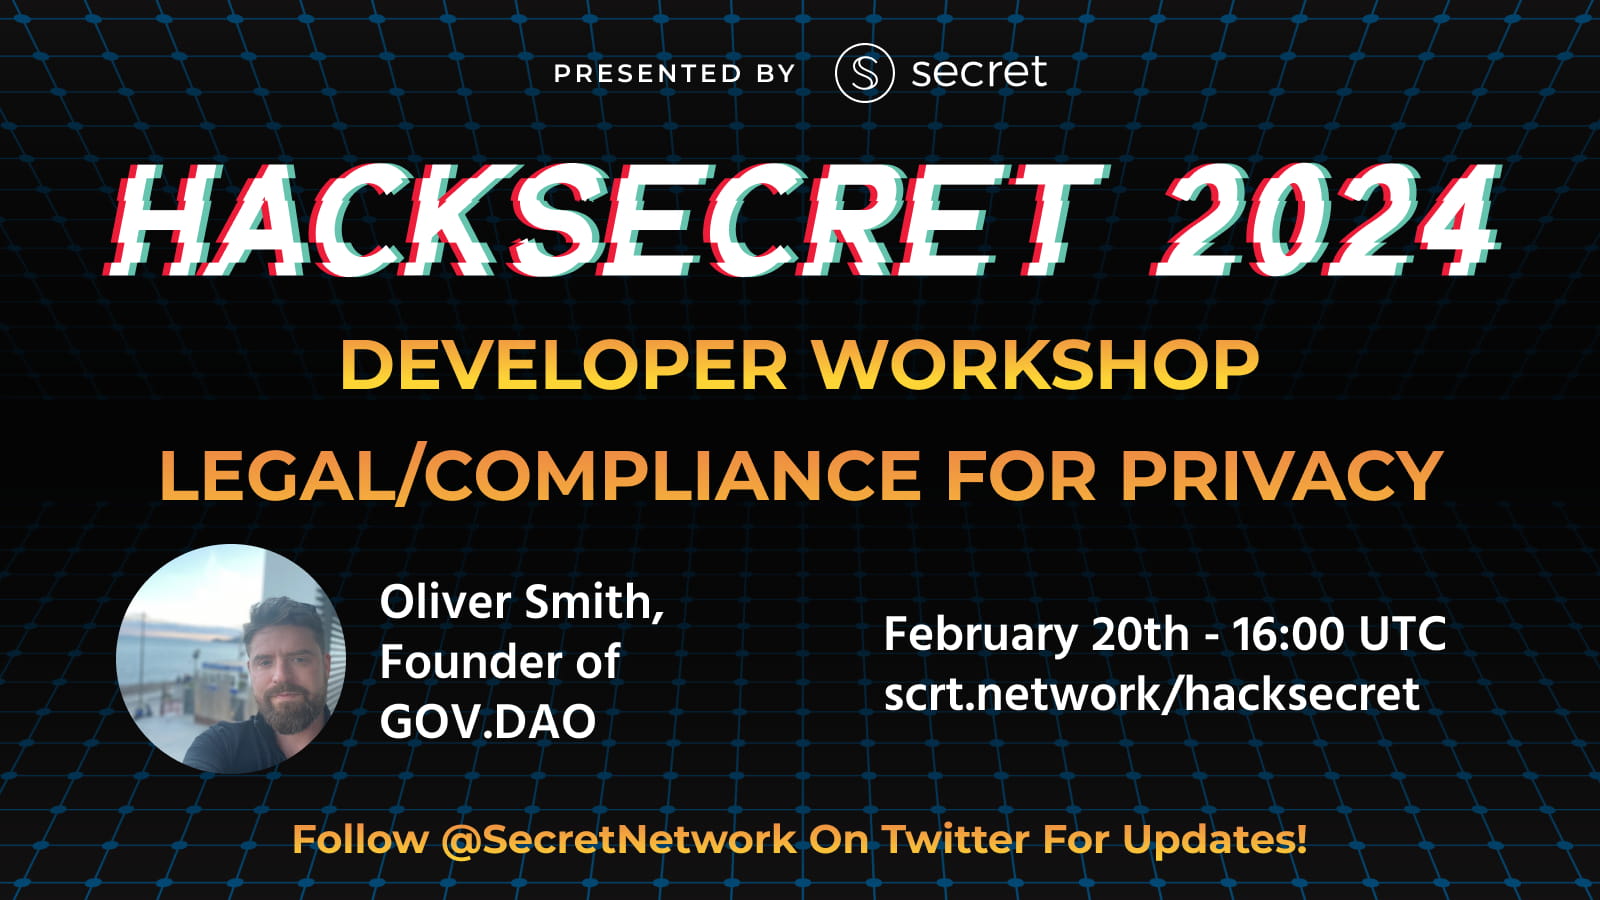 Legal and Compliance for Privacy | HackSecret 2024 Developer Workshop